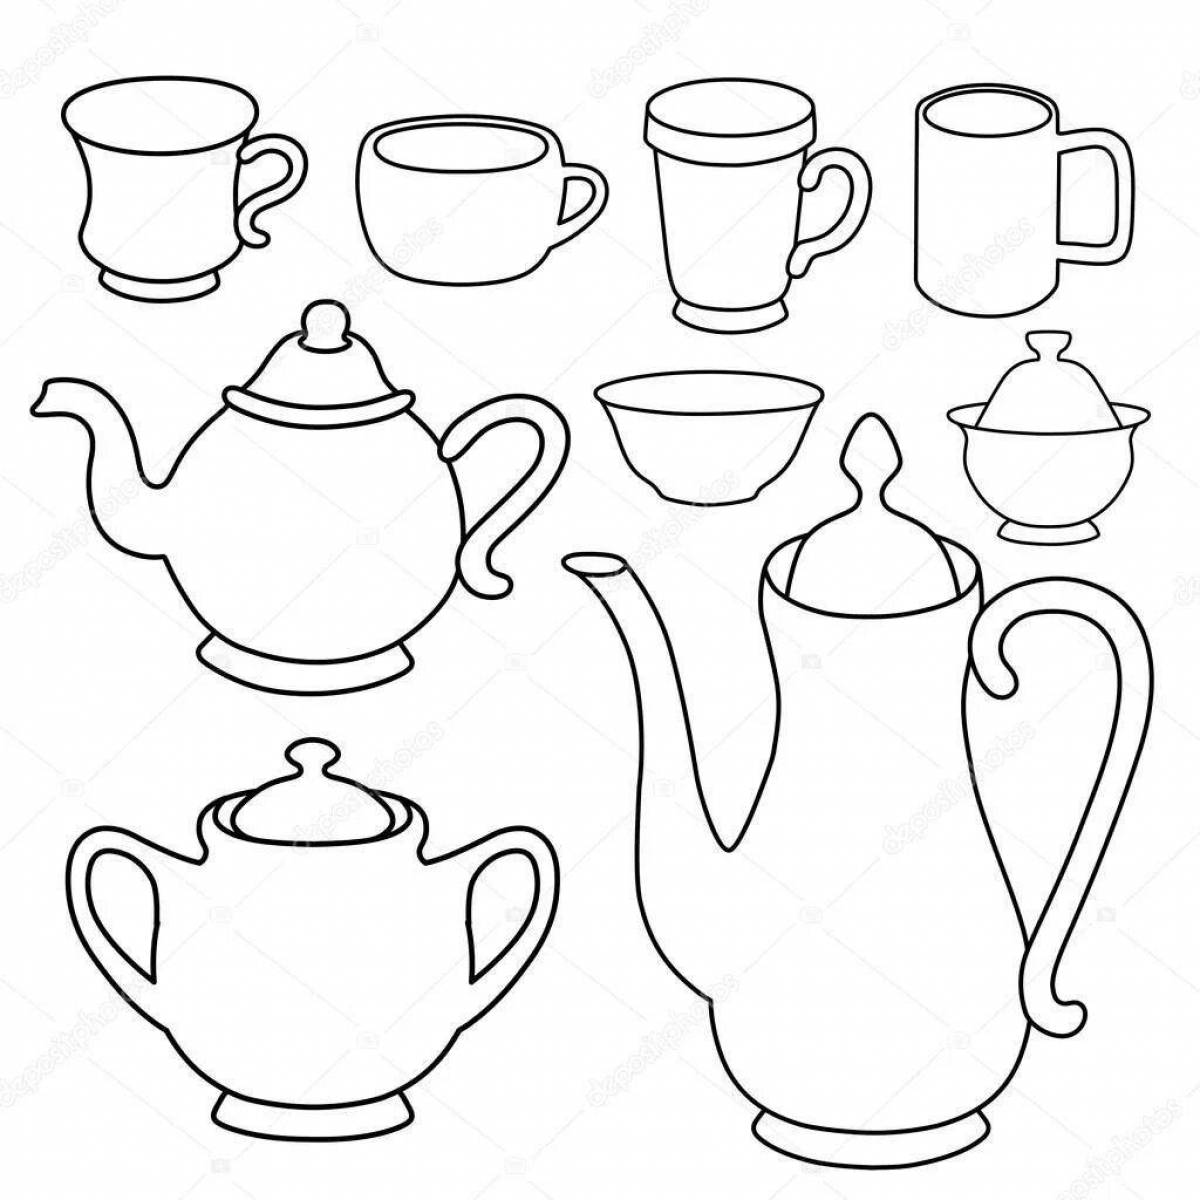 Fancy tea set coloring page